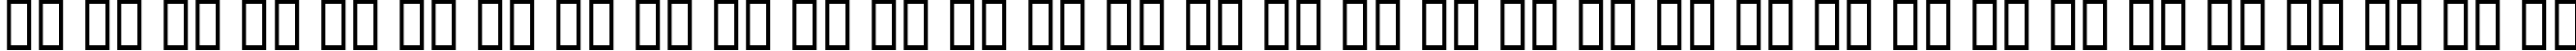 Пример написания русского алфавита шрифтом Blue Highway D Type